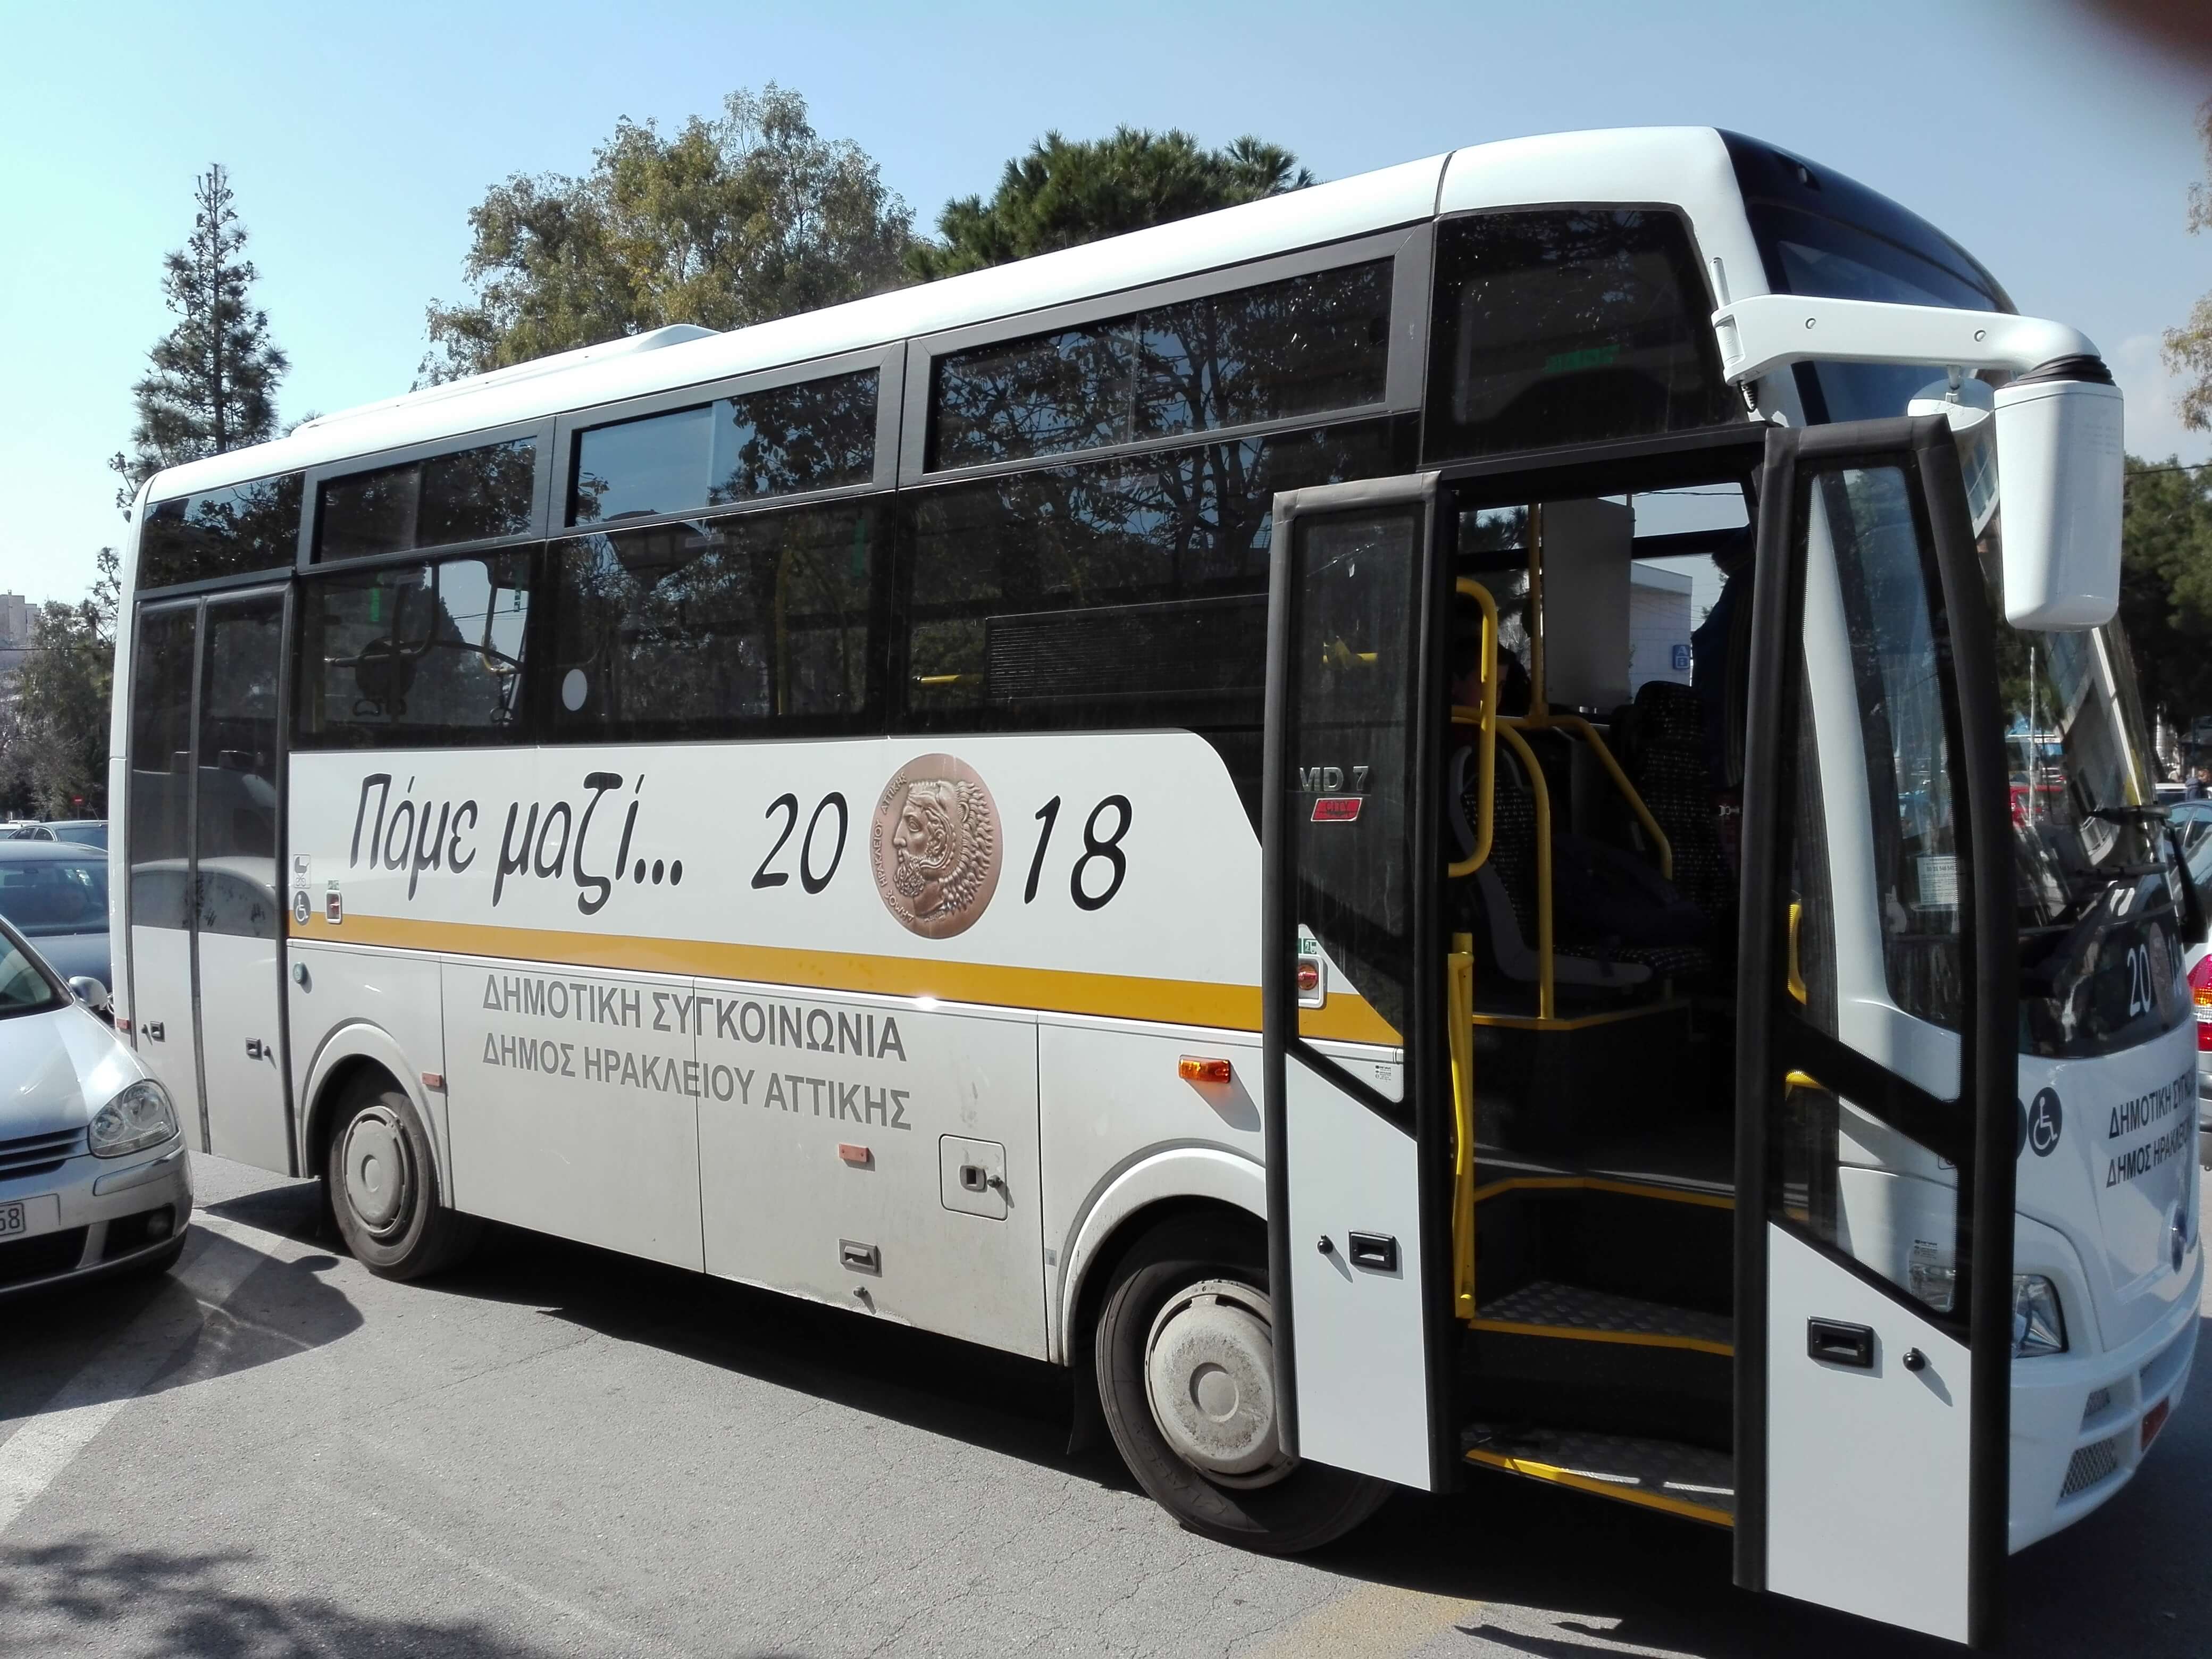 Νέο Ηράκλειο: Τα υπερσύγχρονα λεωφορεία – κόσμημα! Τι λέει ο δήμαρχος Νίκος Μπάμπαλος